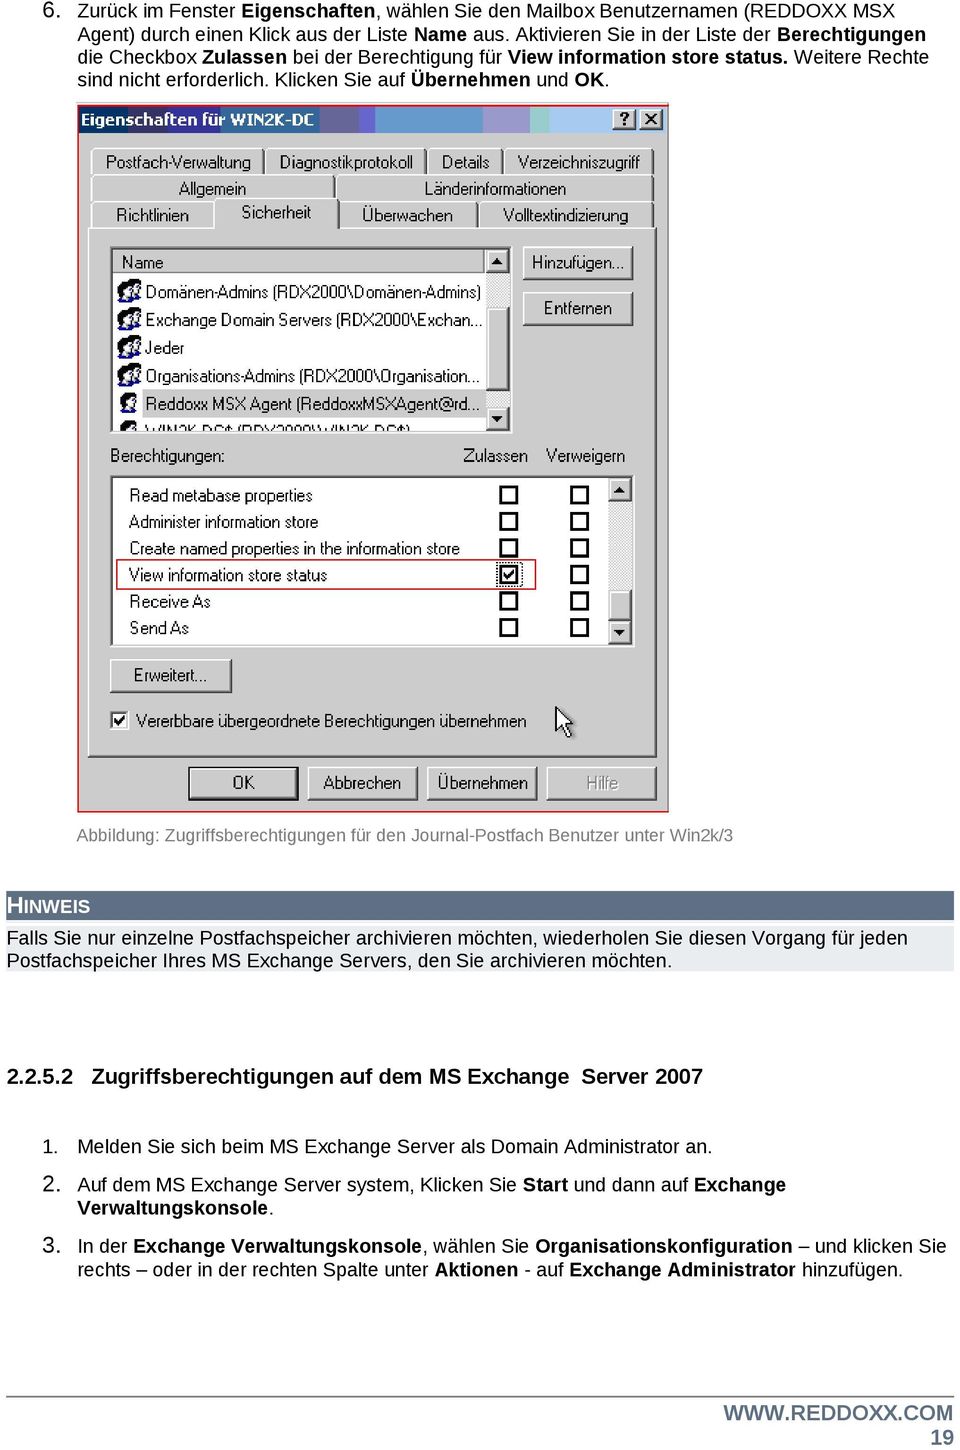 Abbildung: Zugriffsberechtigungen für den Journal-Postfach Benutzer unter Win2k/3 HINWEIS Falls Sie nur einzelne Postfachspeicher archivieren möchten, wiederholen Sie diesen Vorgang für jeden